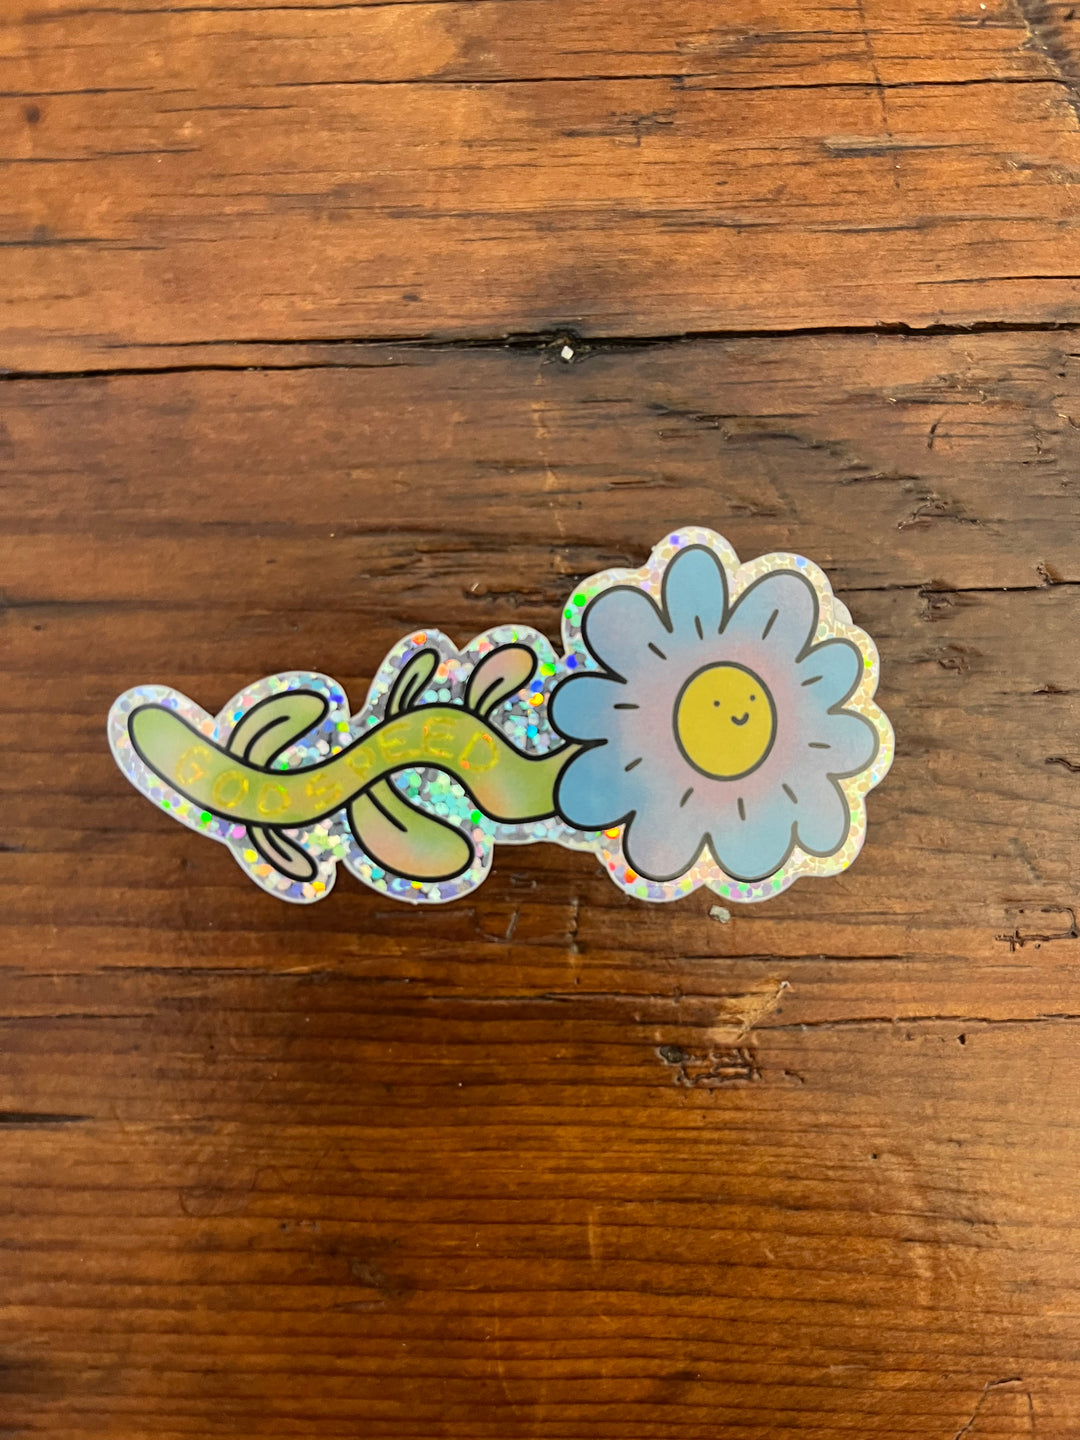 Godspeed Flower Power Glitter Sticker